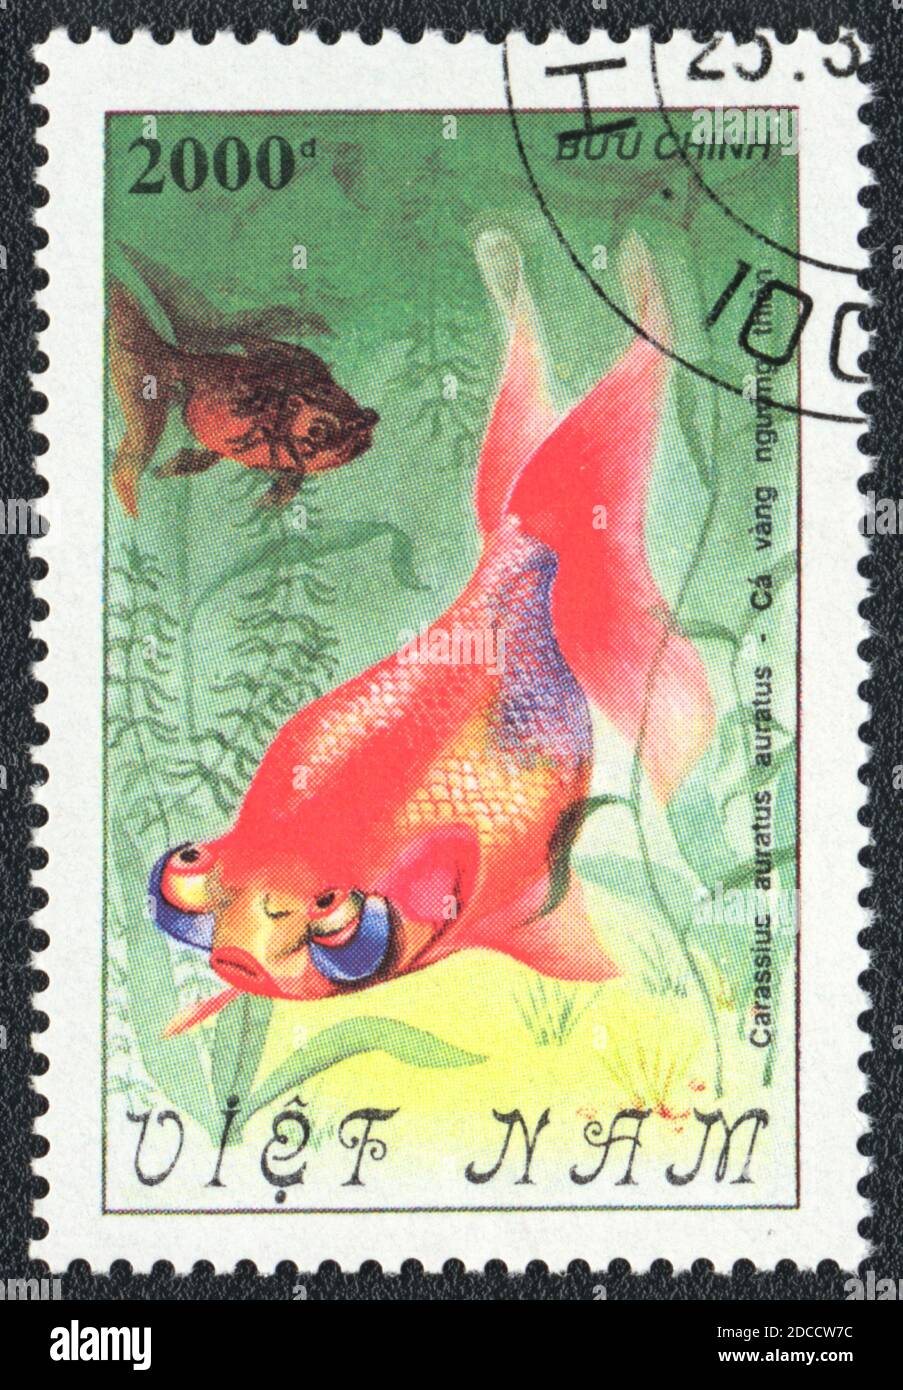 Un timbre imprimé au Vietnam montre un poisson-or céleste Fantail ou un Choutengan (Carassius auratus auratus), série 'poisson-or', 1990 Banque D'Images